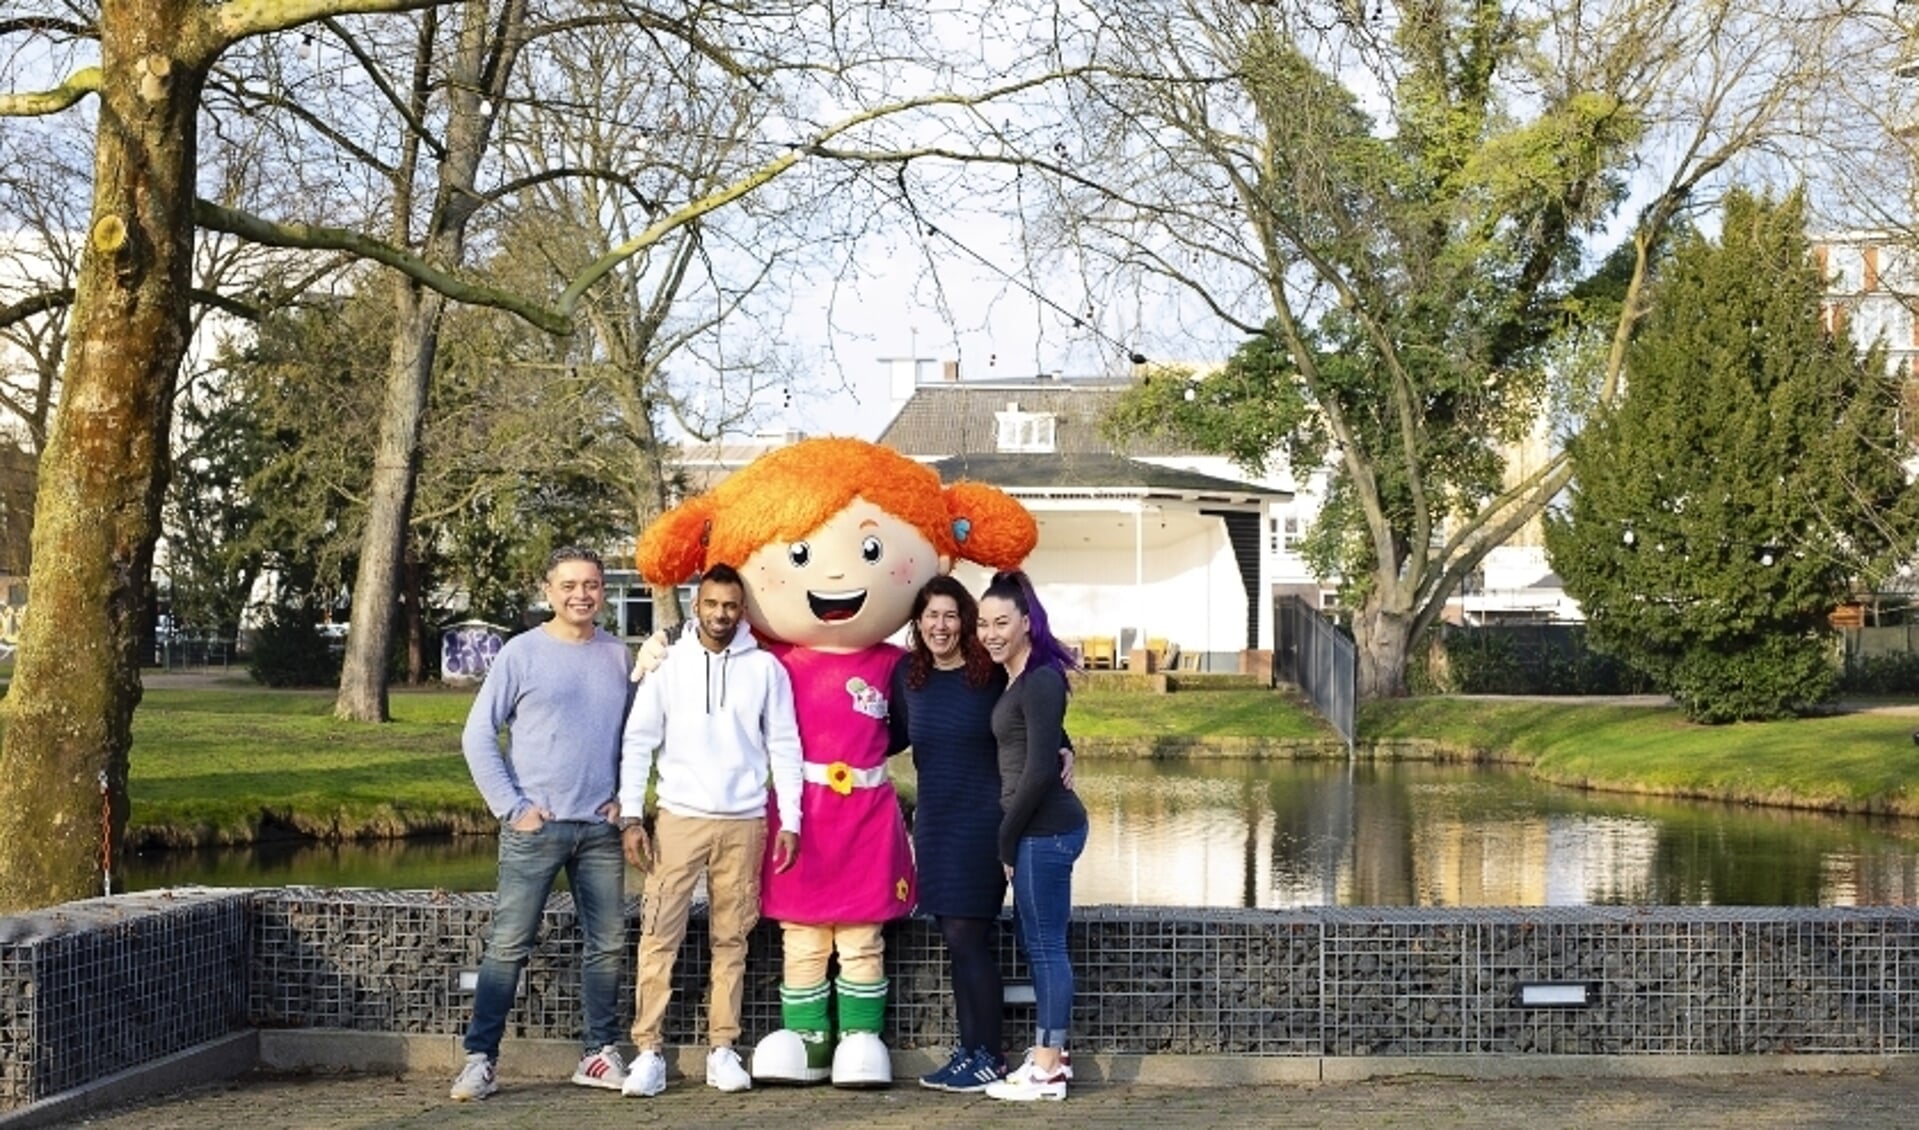 De organisatie met mascotte Sproet. De foto is gemaakt voor de corona-uitbraak in Nederland. 